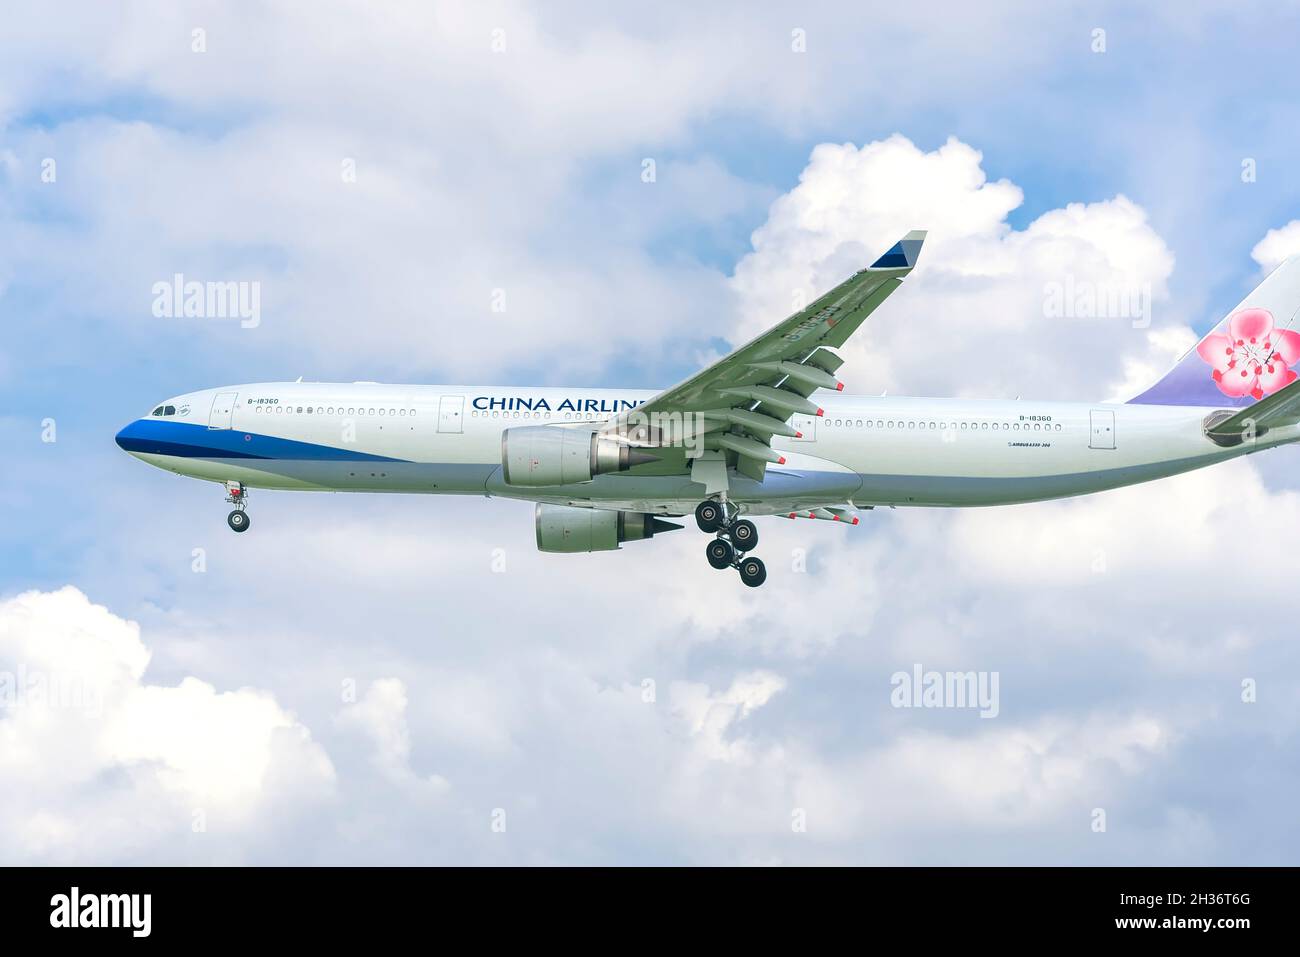 Avion cargo portant le numéro B-18360 Airbus A330 de China Airlines atterrissant à l'aéroport international de Tan son Nhat, Ho Chi Minh-ville, Vietnam Banque D'Images